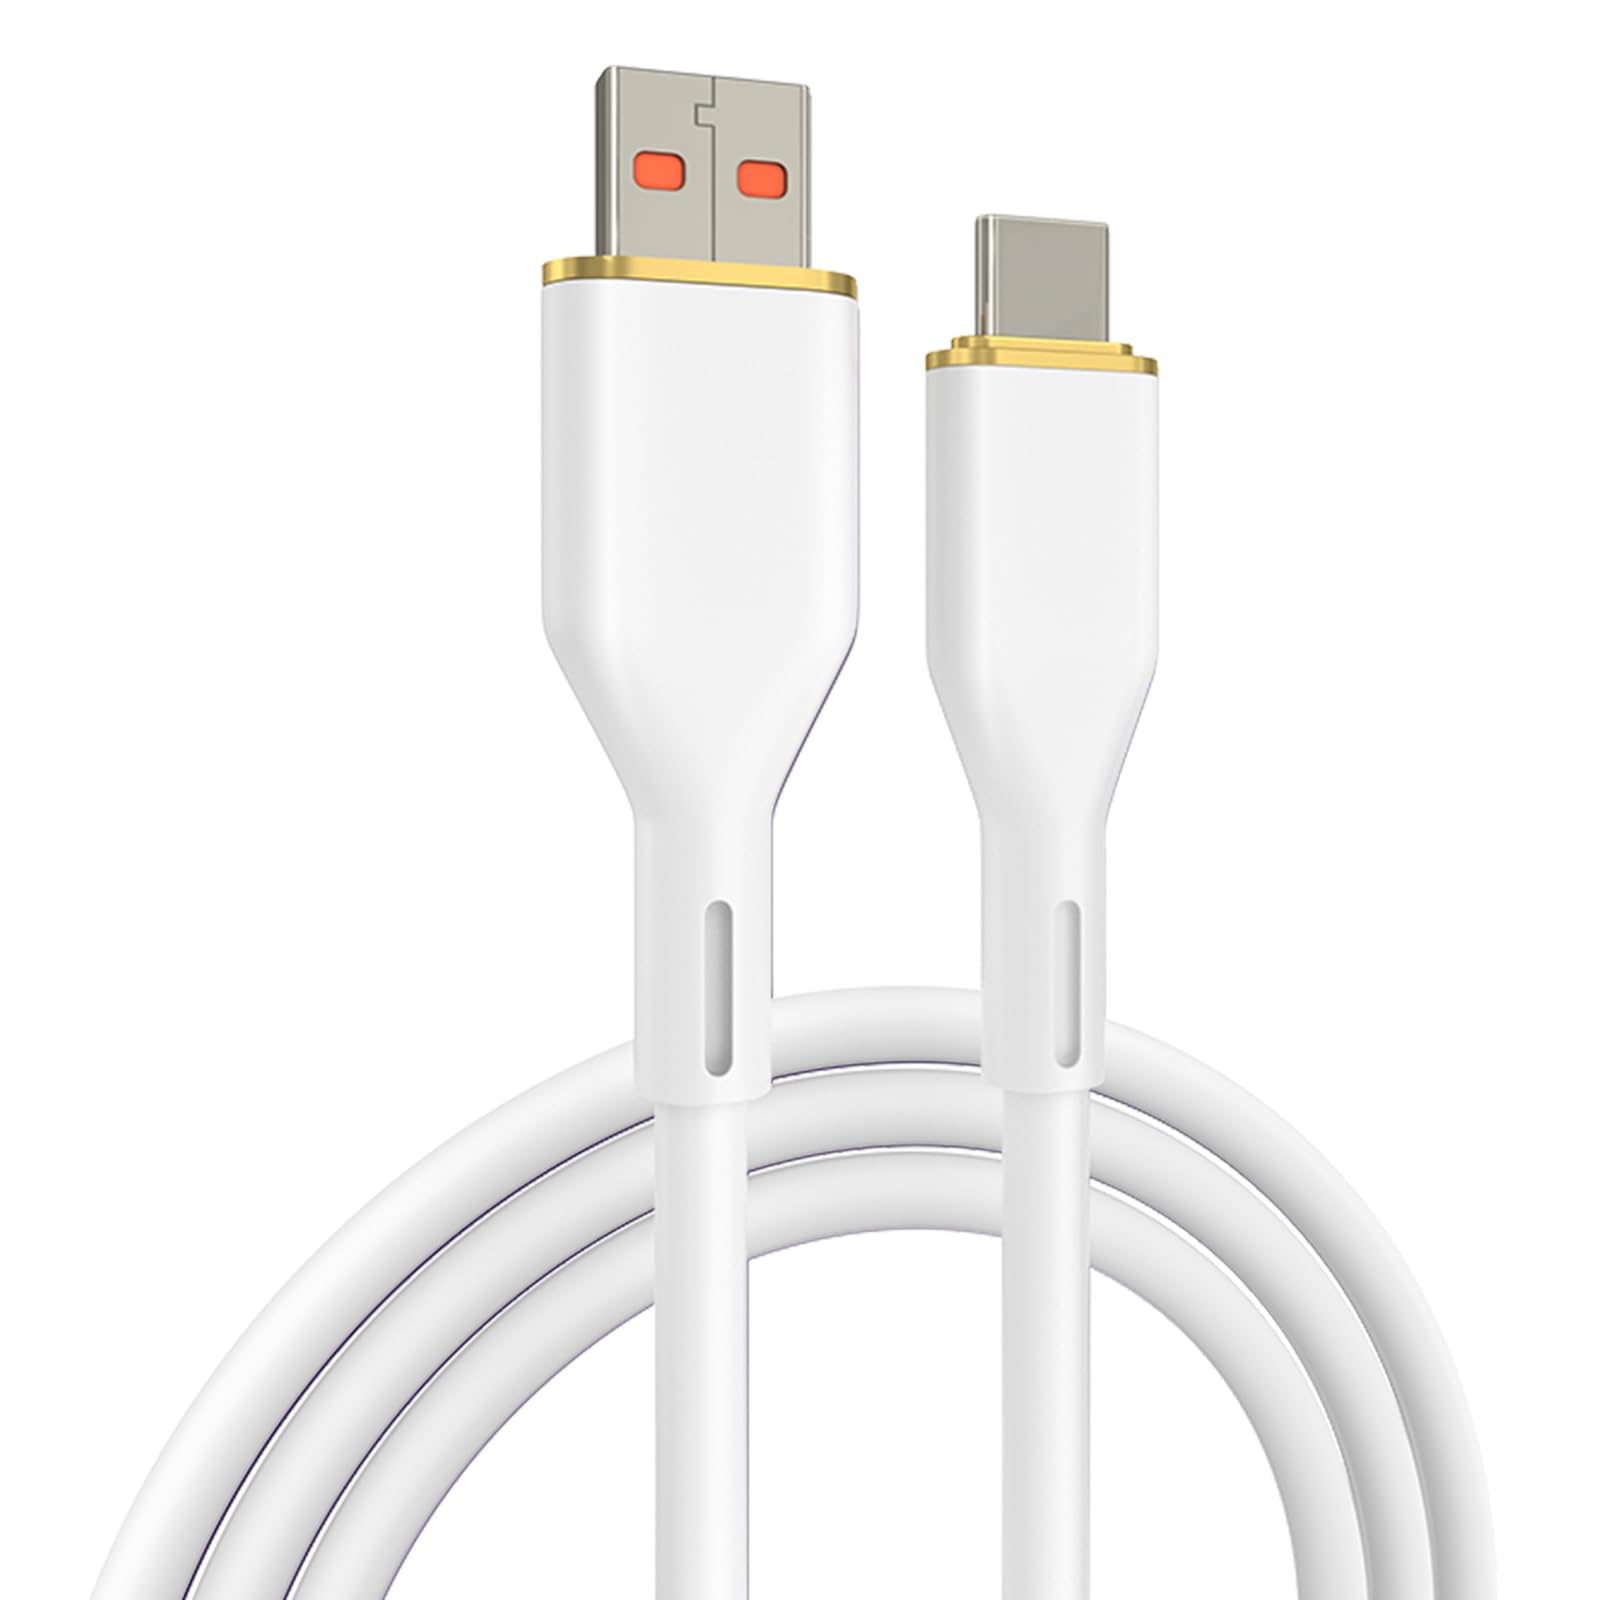 USB C 型电缆，USB A 至 USB C 5A 快速充电（3.3 英尺 1 包）充电线兼容三星 Galaxy S10 S9 S8 Plus、Note 9 8、A11 A20 A51、LG G6 G7 V30 V35、Moto Z2 Z3(图5)